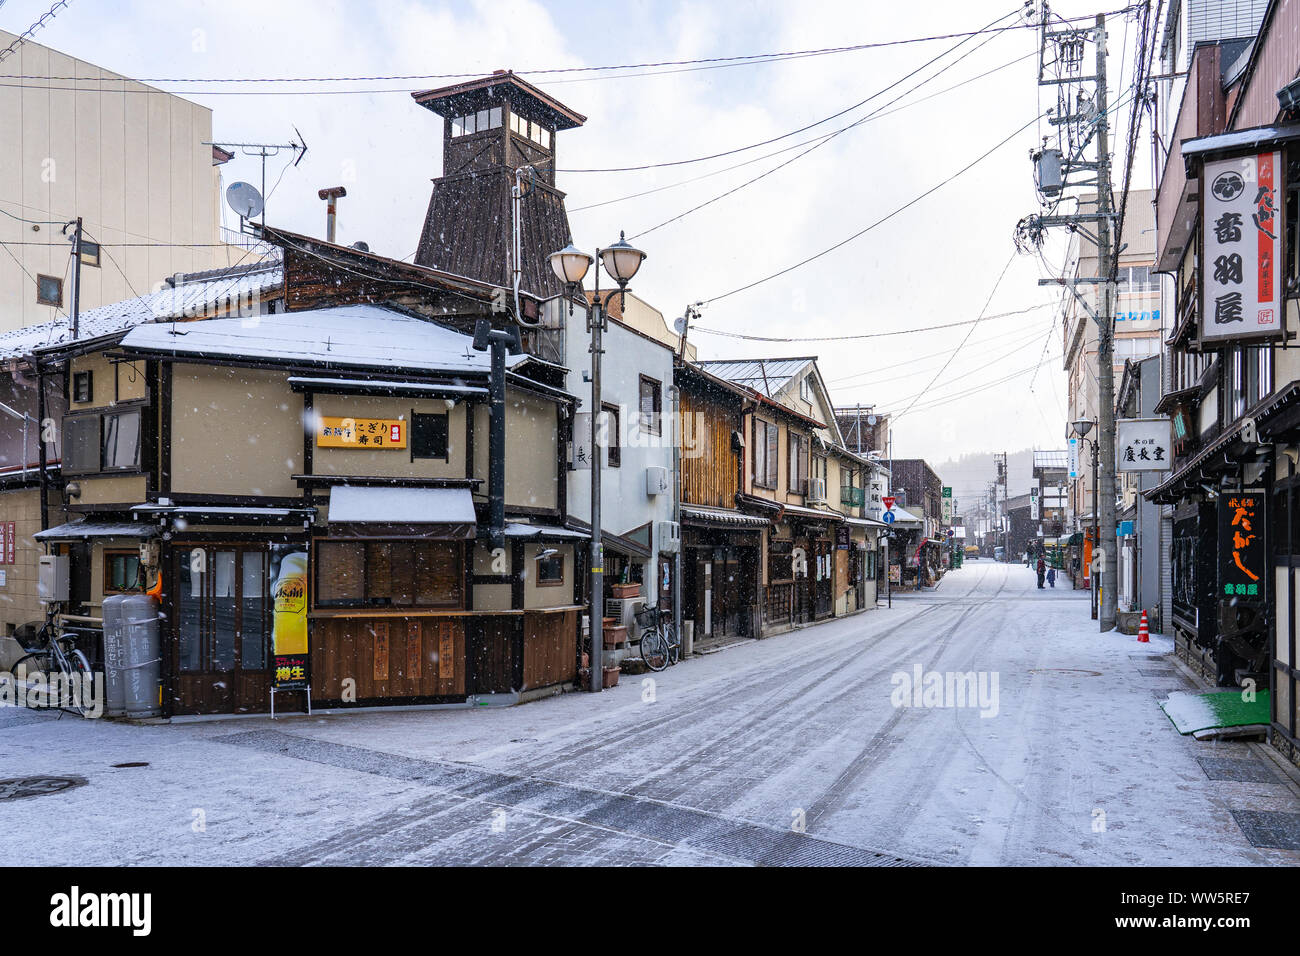 Takayama old town with snow falling in Gifu, Japan. Stock Photo